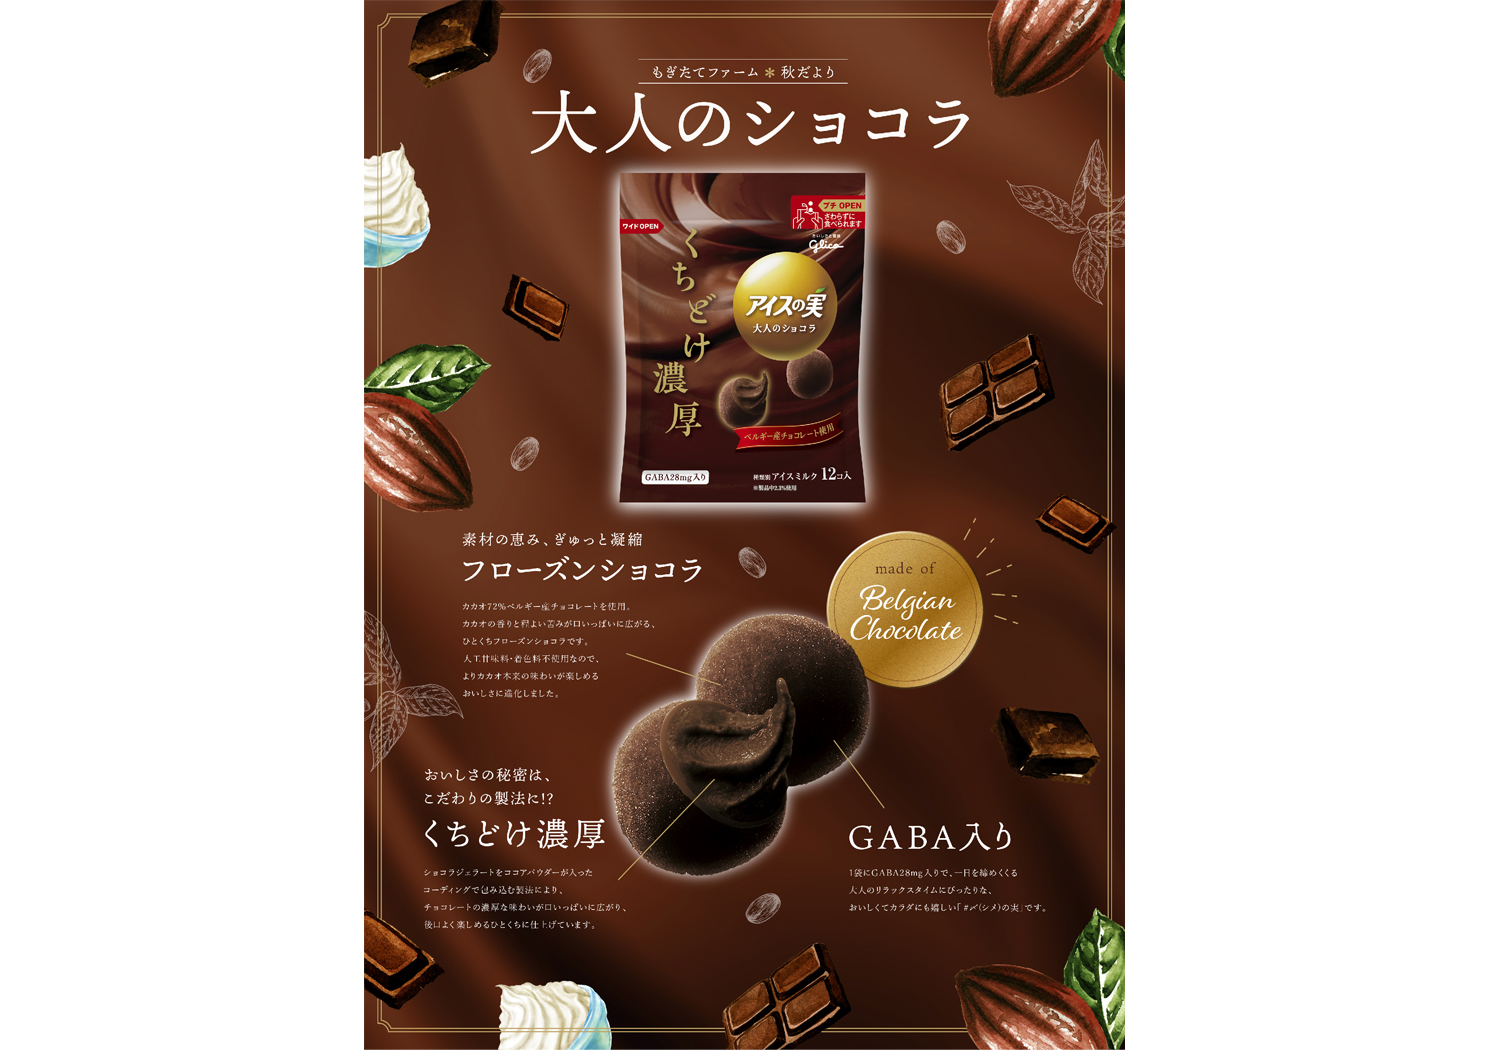 Glico icenomi chocolate